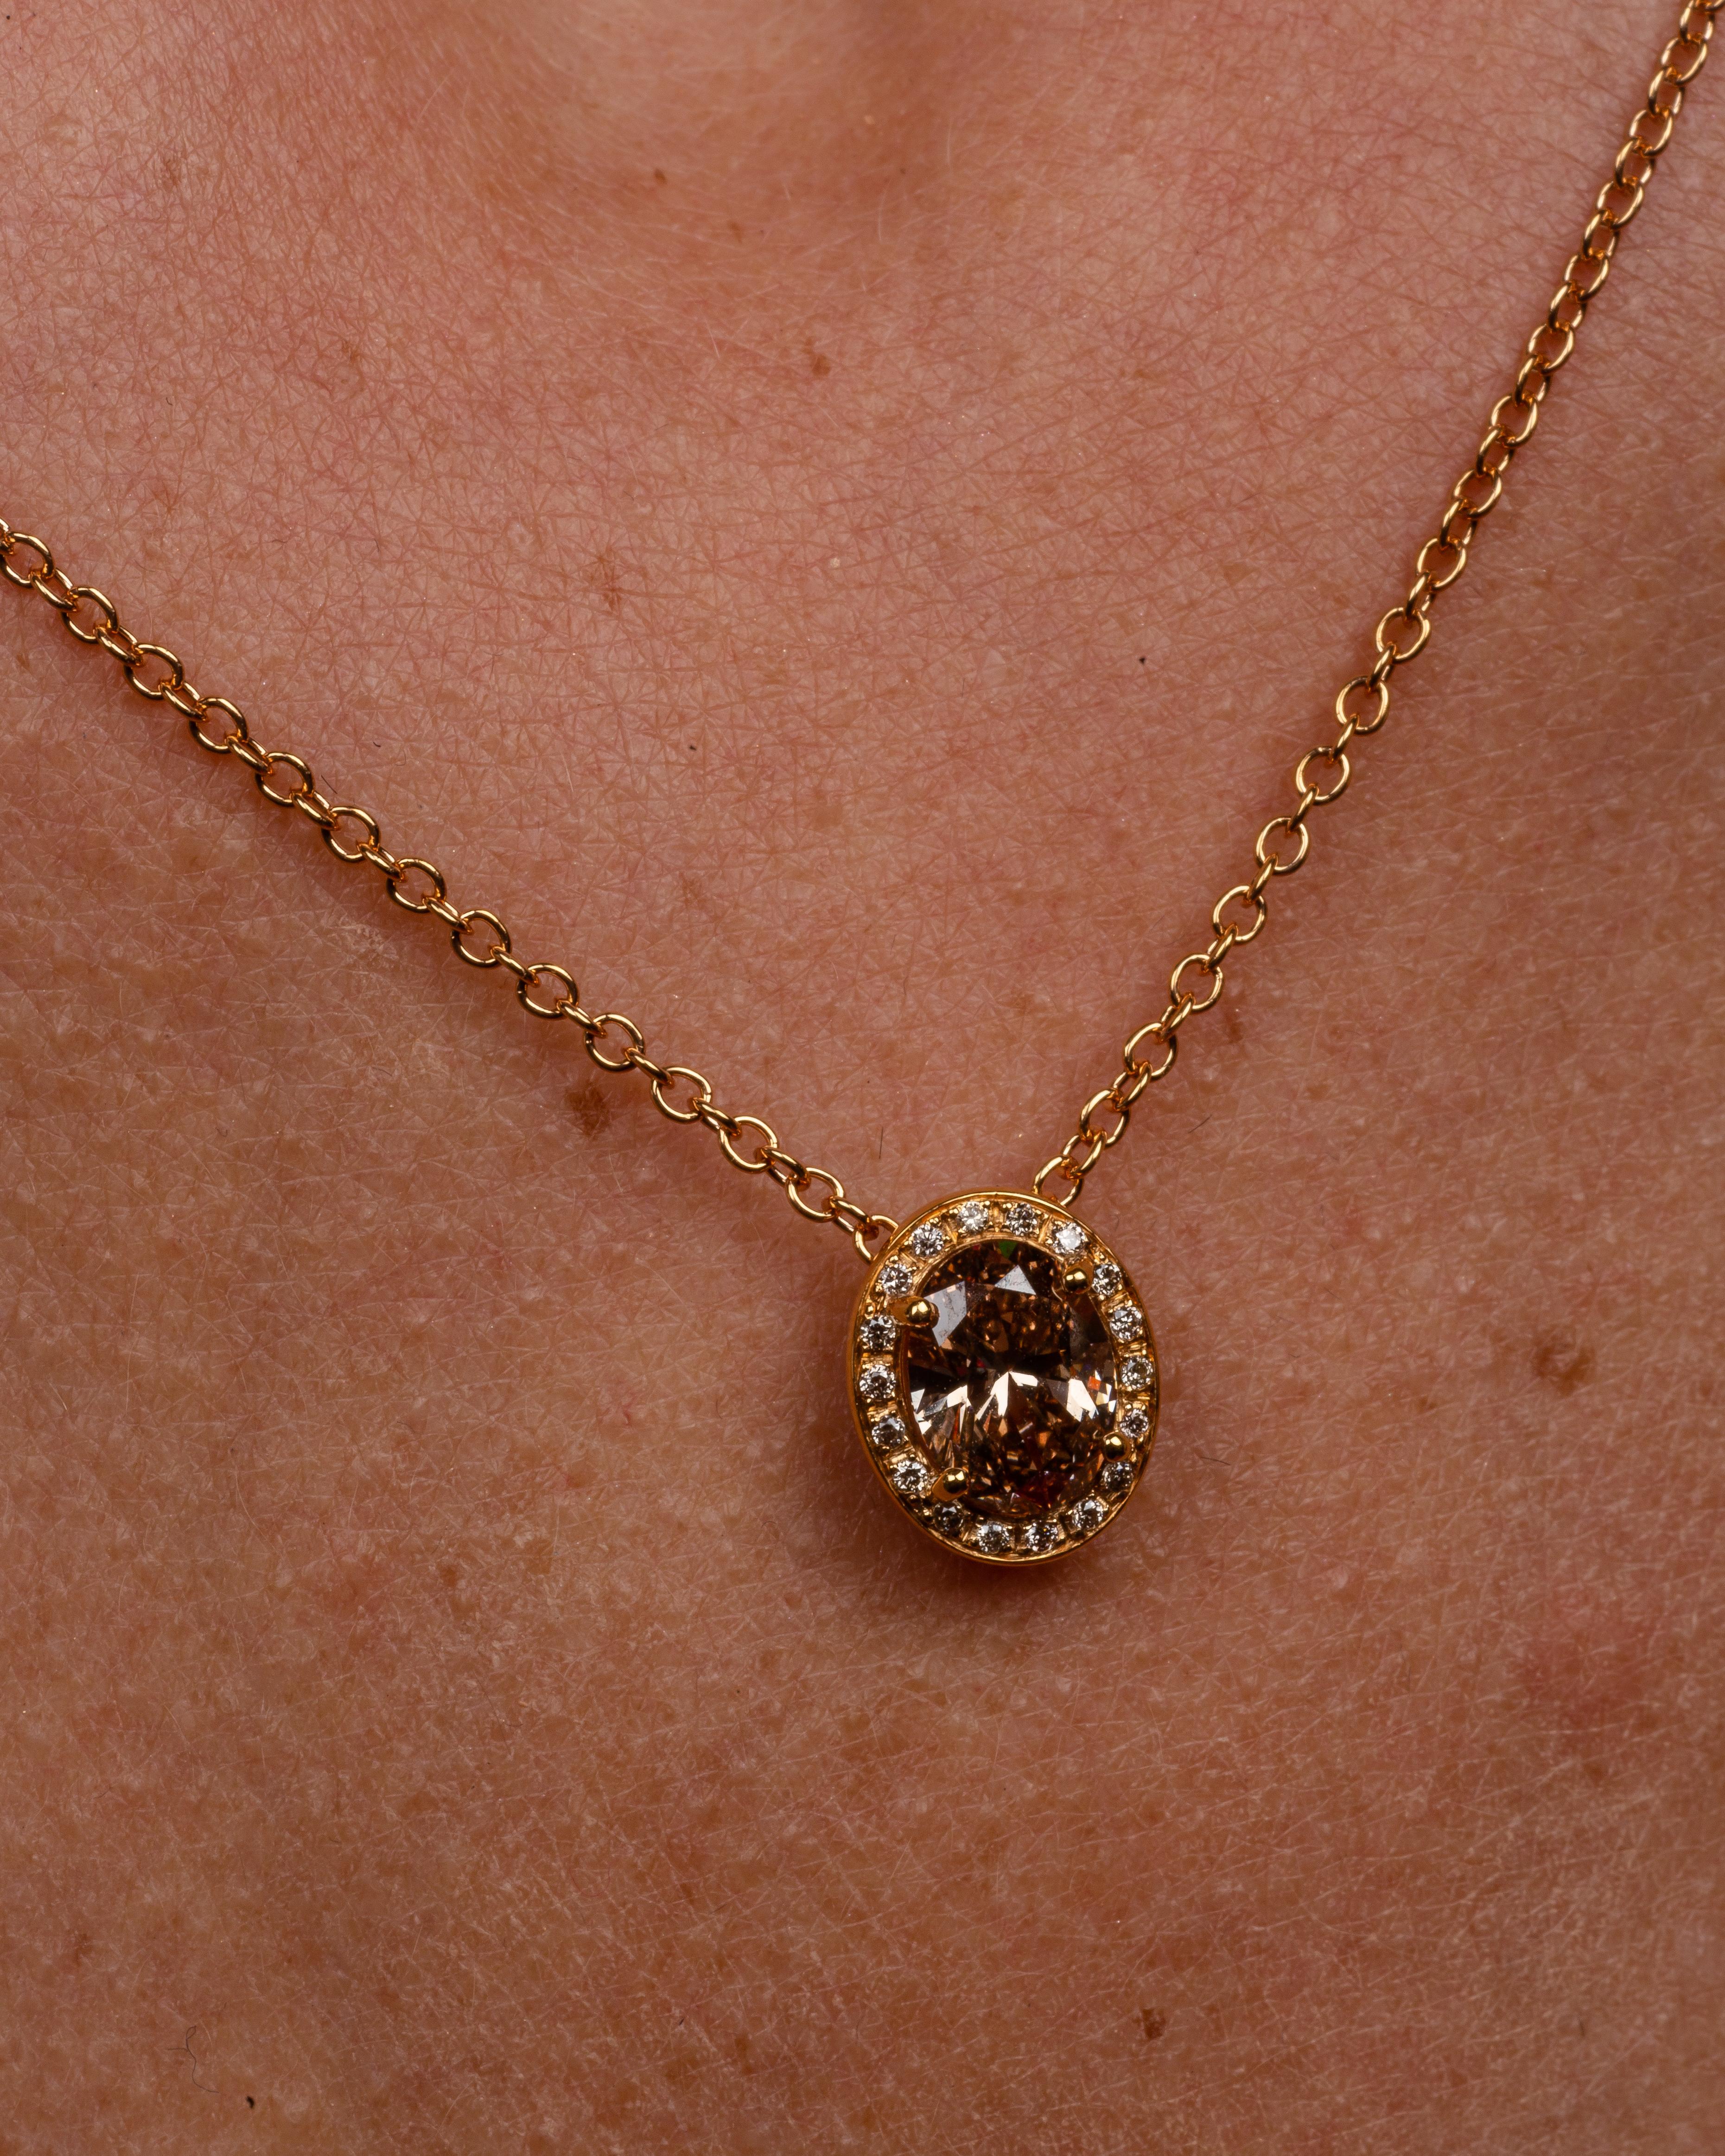 Dieser elegante Anhänger aus 18 Karat Gelbgold ist aus unserer Divine Collection. Er besteht aus einem ovalen braunen Diamanten von insgesamt 1,01 Karat, verziert mit runden farblosen Diamanten von insgesamt 0,07 Karat und runden braunen Diamanten